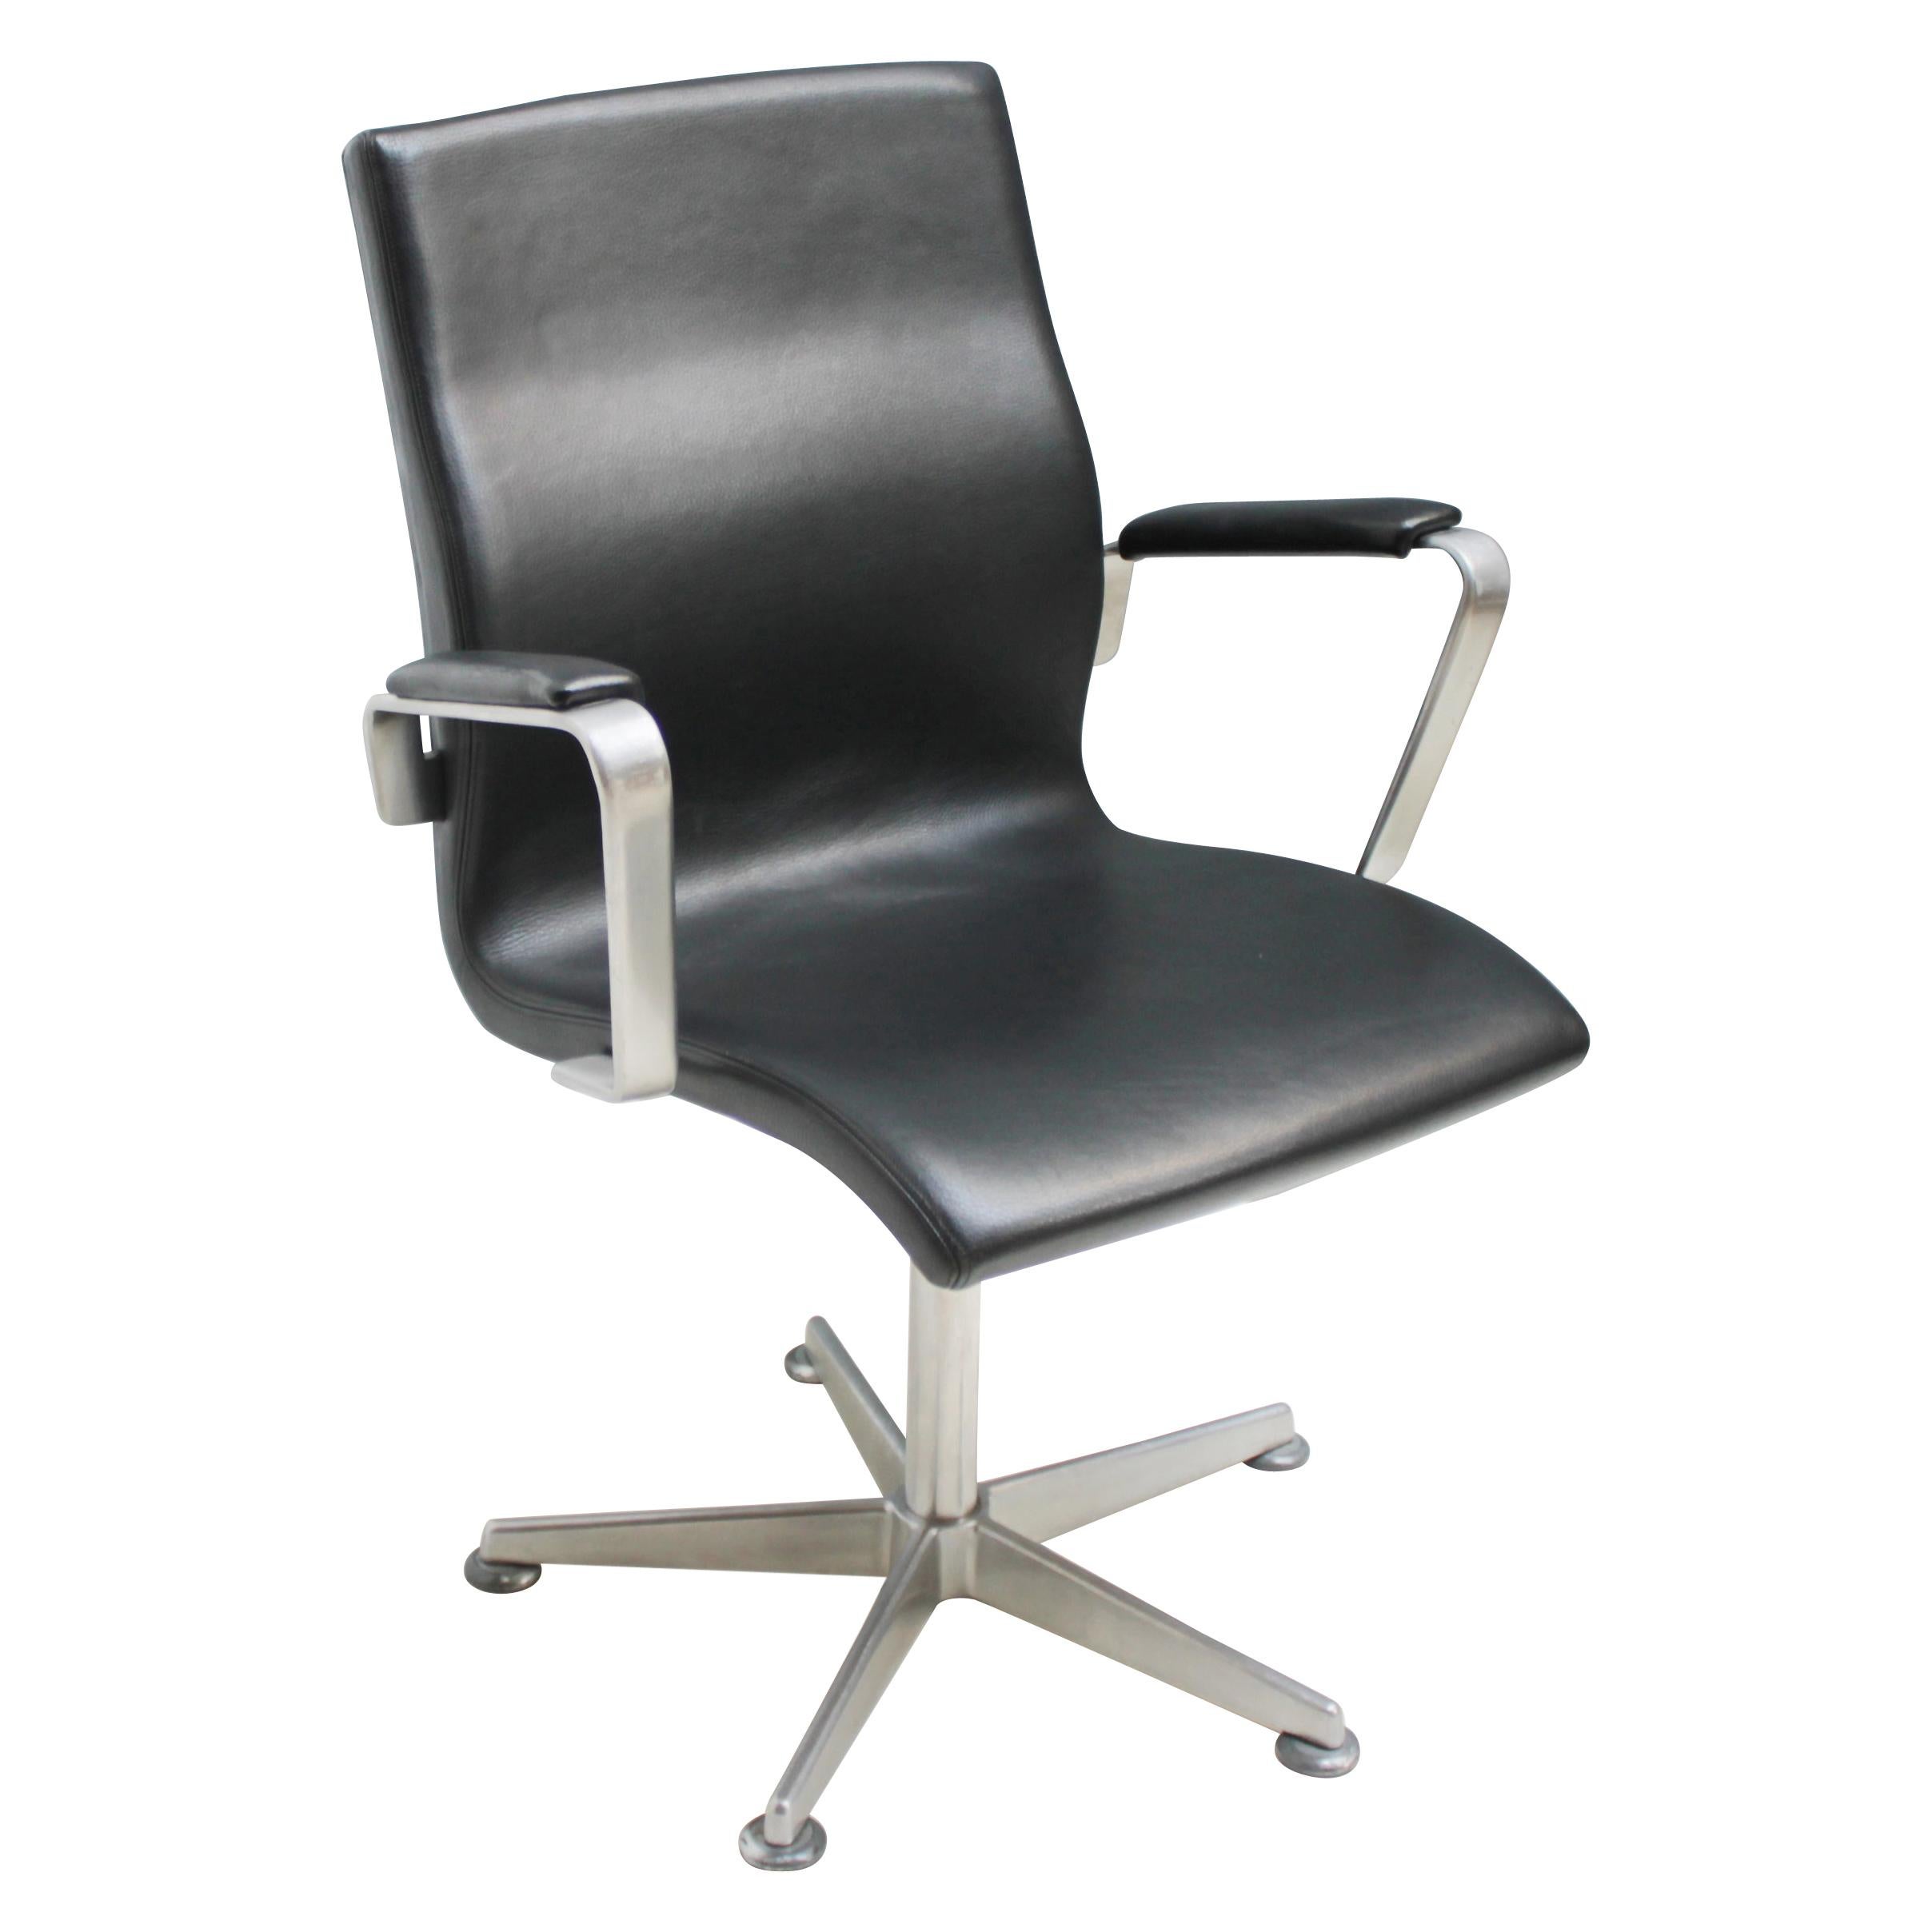 Oxford Swivel Chair by Arne Jacobsen for Fritz Hansen